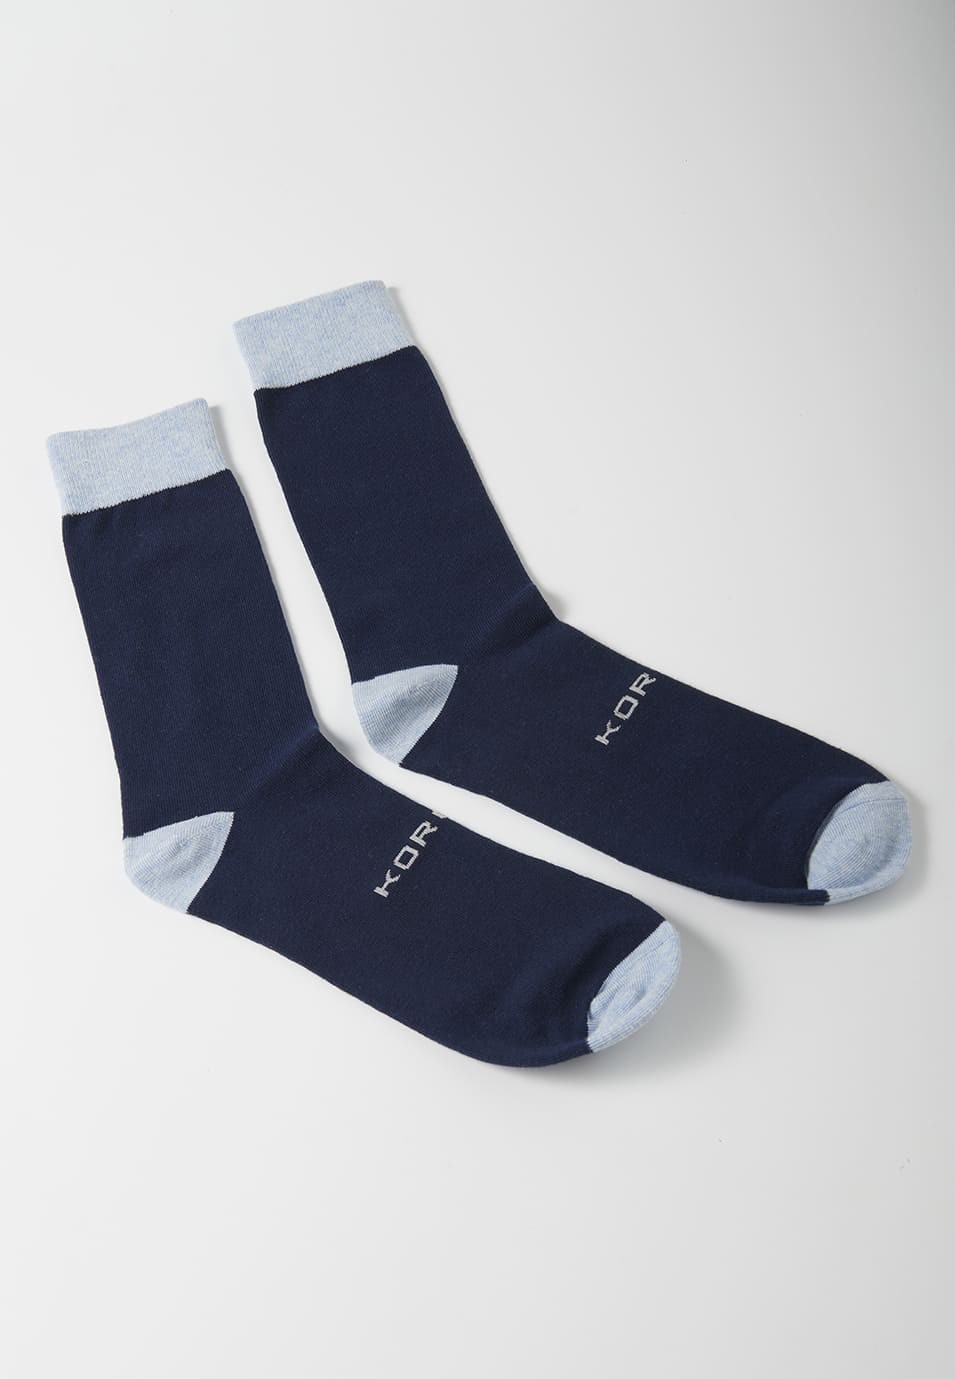 Packung mit 7 Socken in verschiedenen Farben über dem Knöchel für Herren